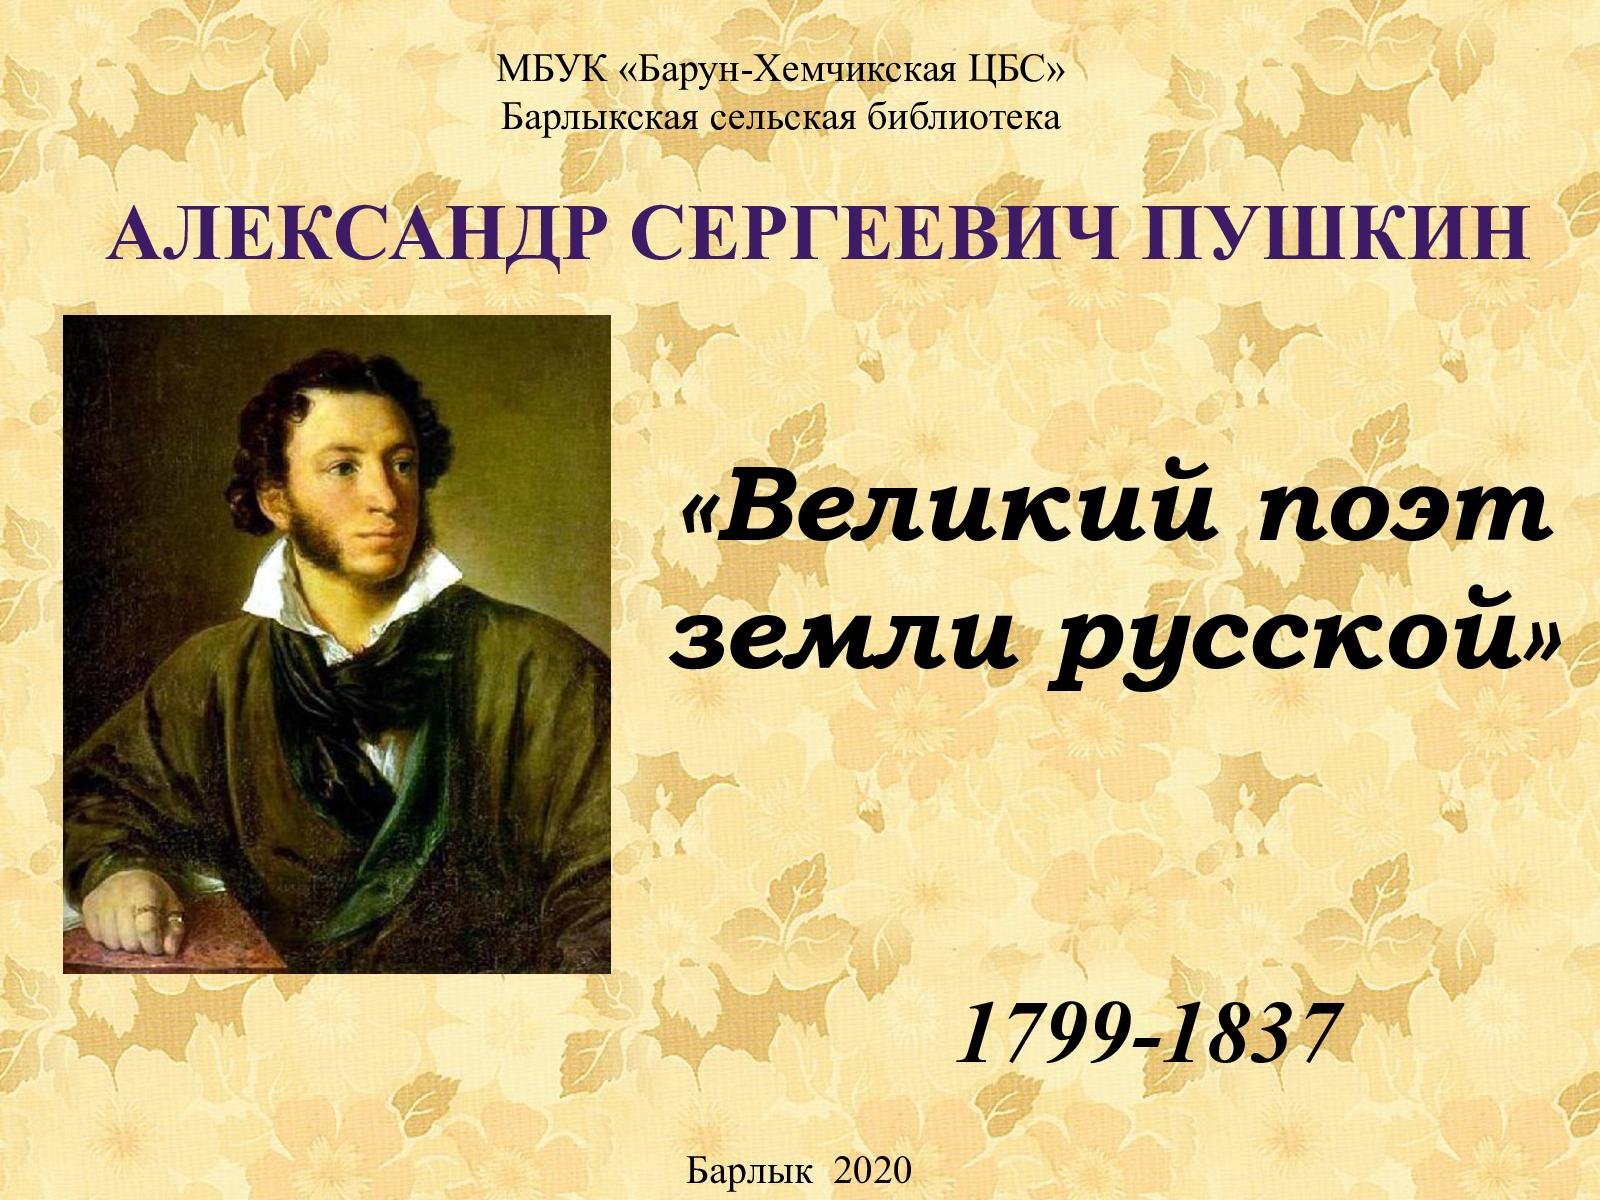 Дата пушкинского дня. 6 Июня день рождения Пушкина. 6 Июня день рождения Пушкина Пушкинский день.